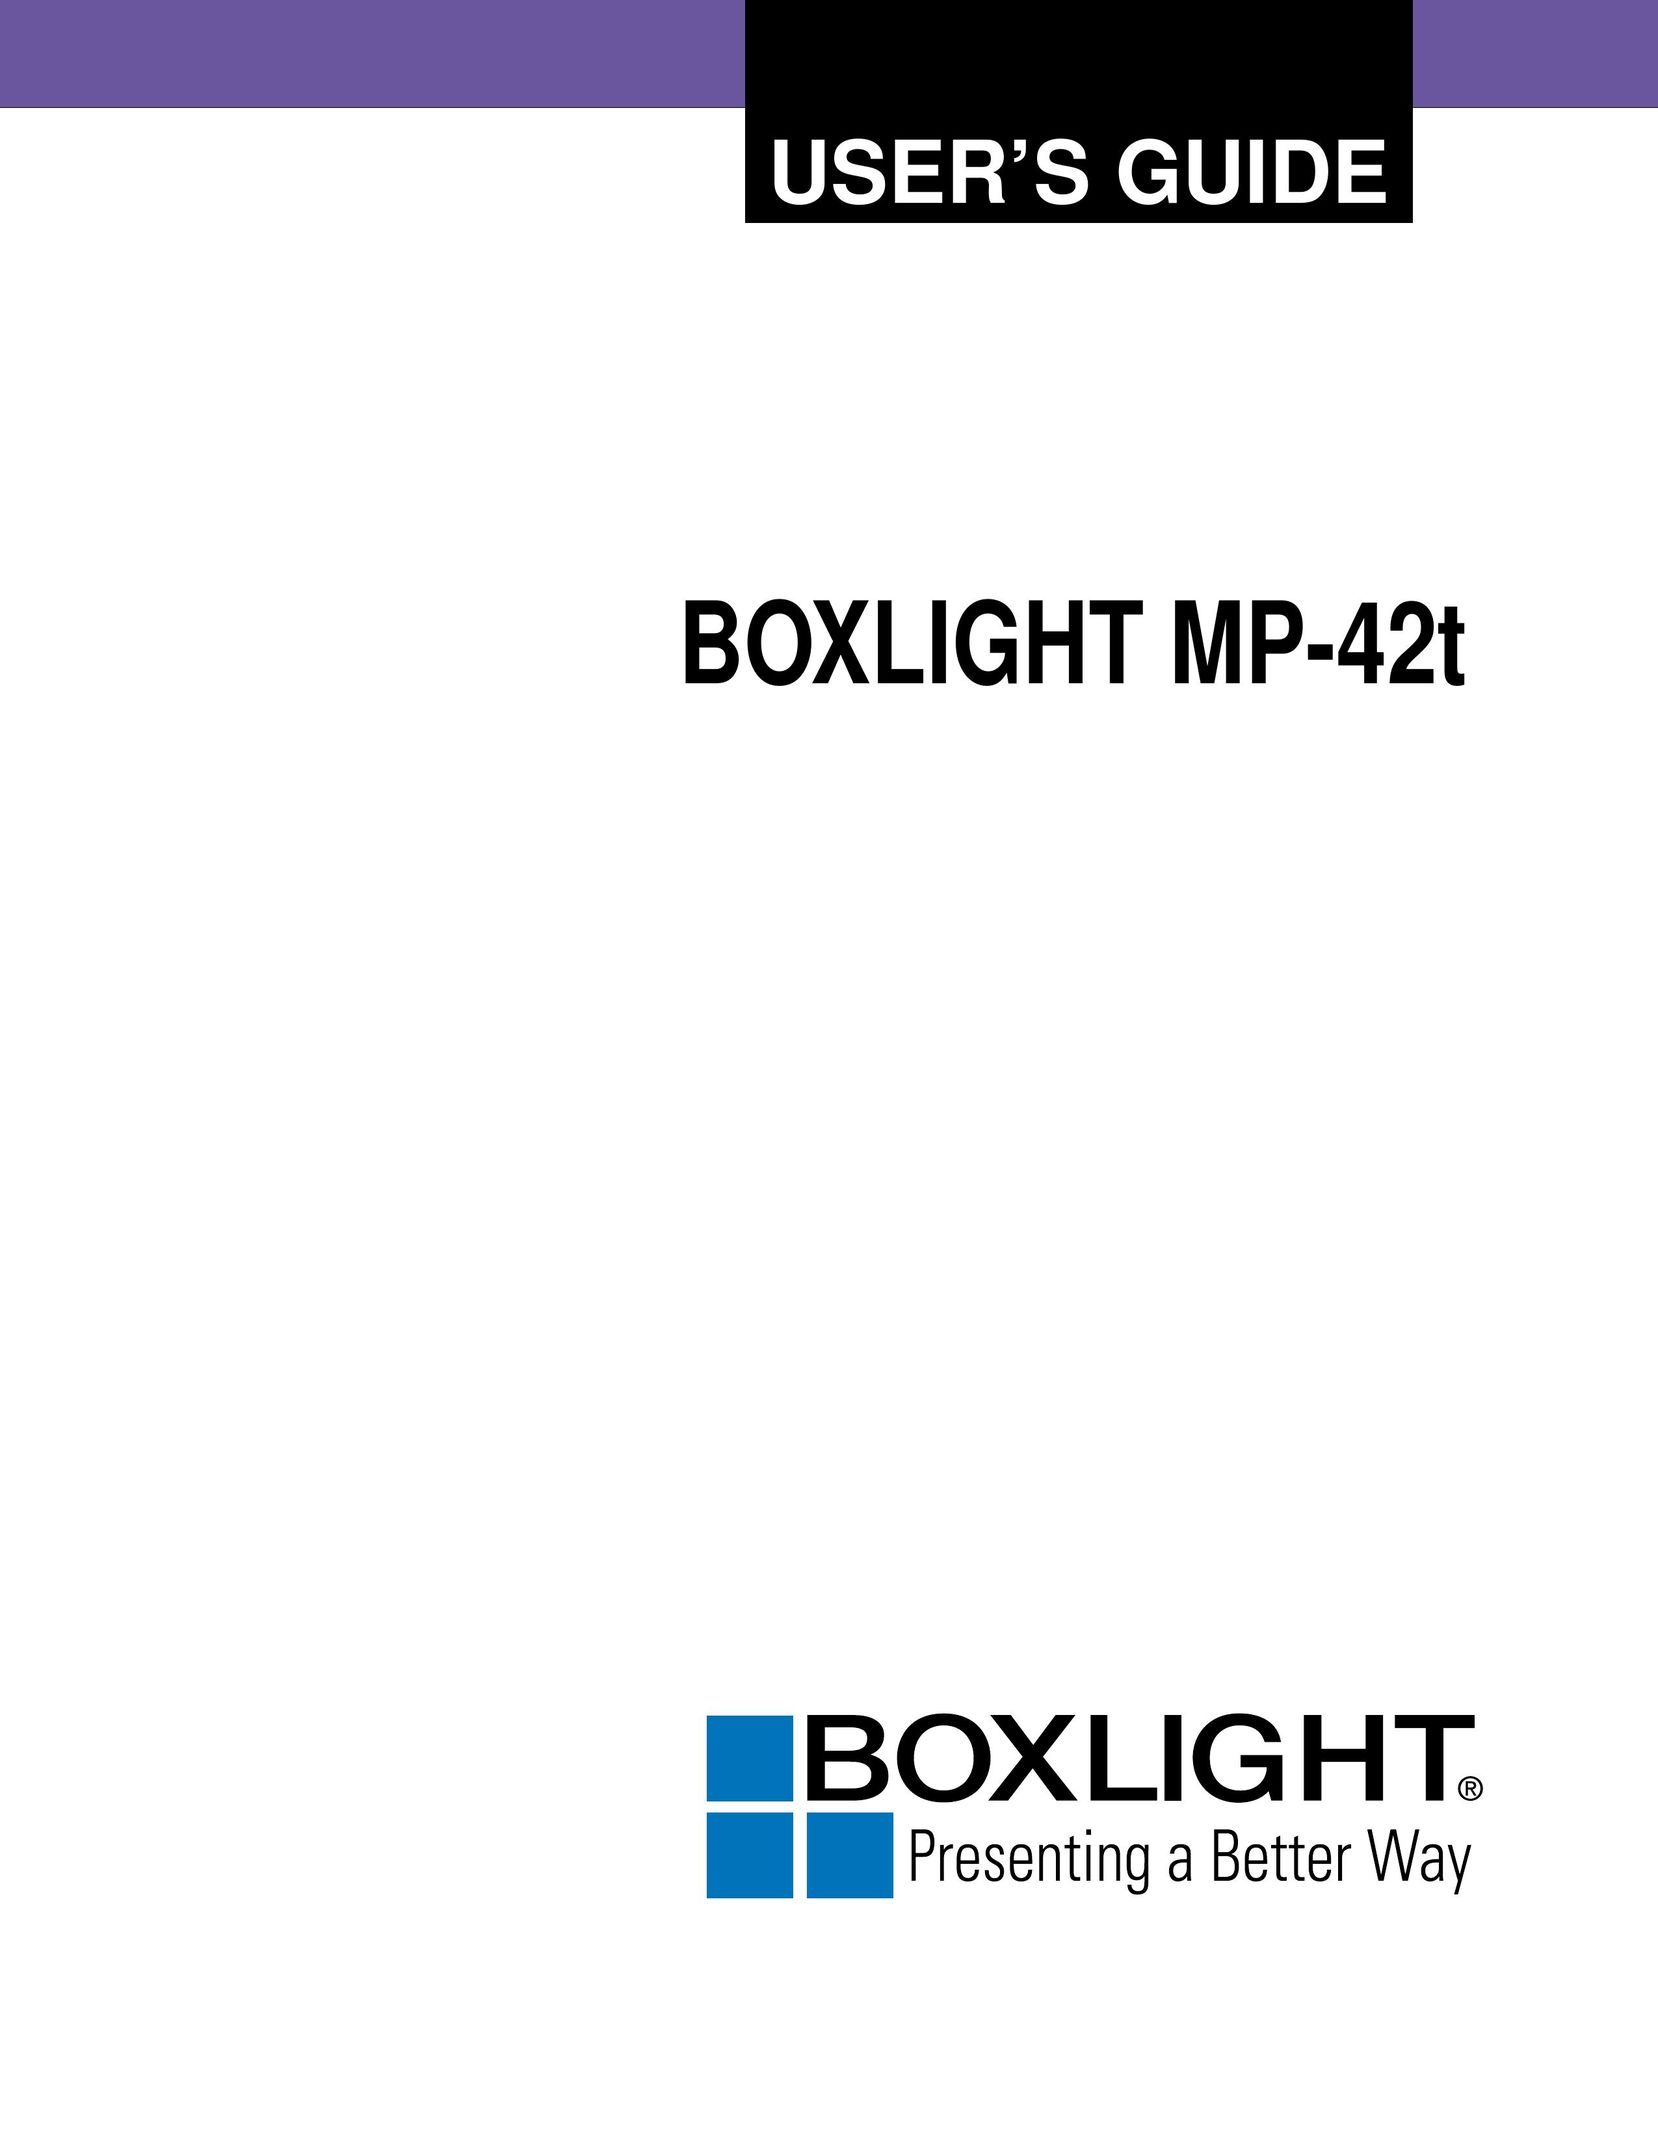 BOXLIGHT MP-42T Projector User Manual